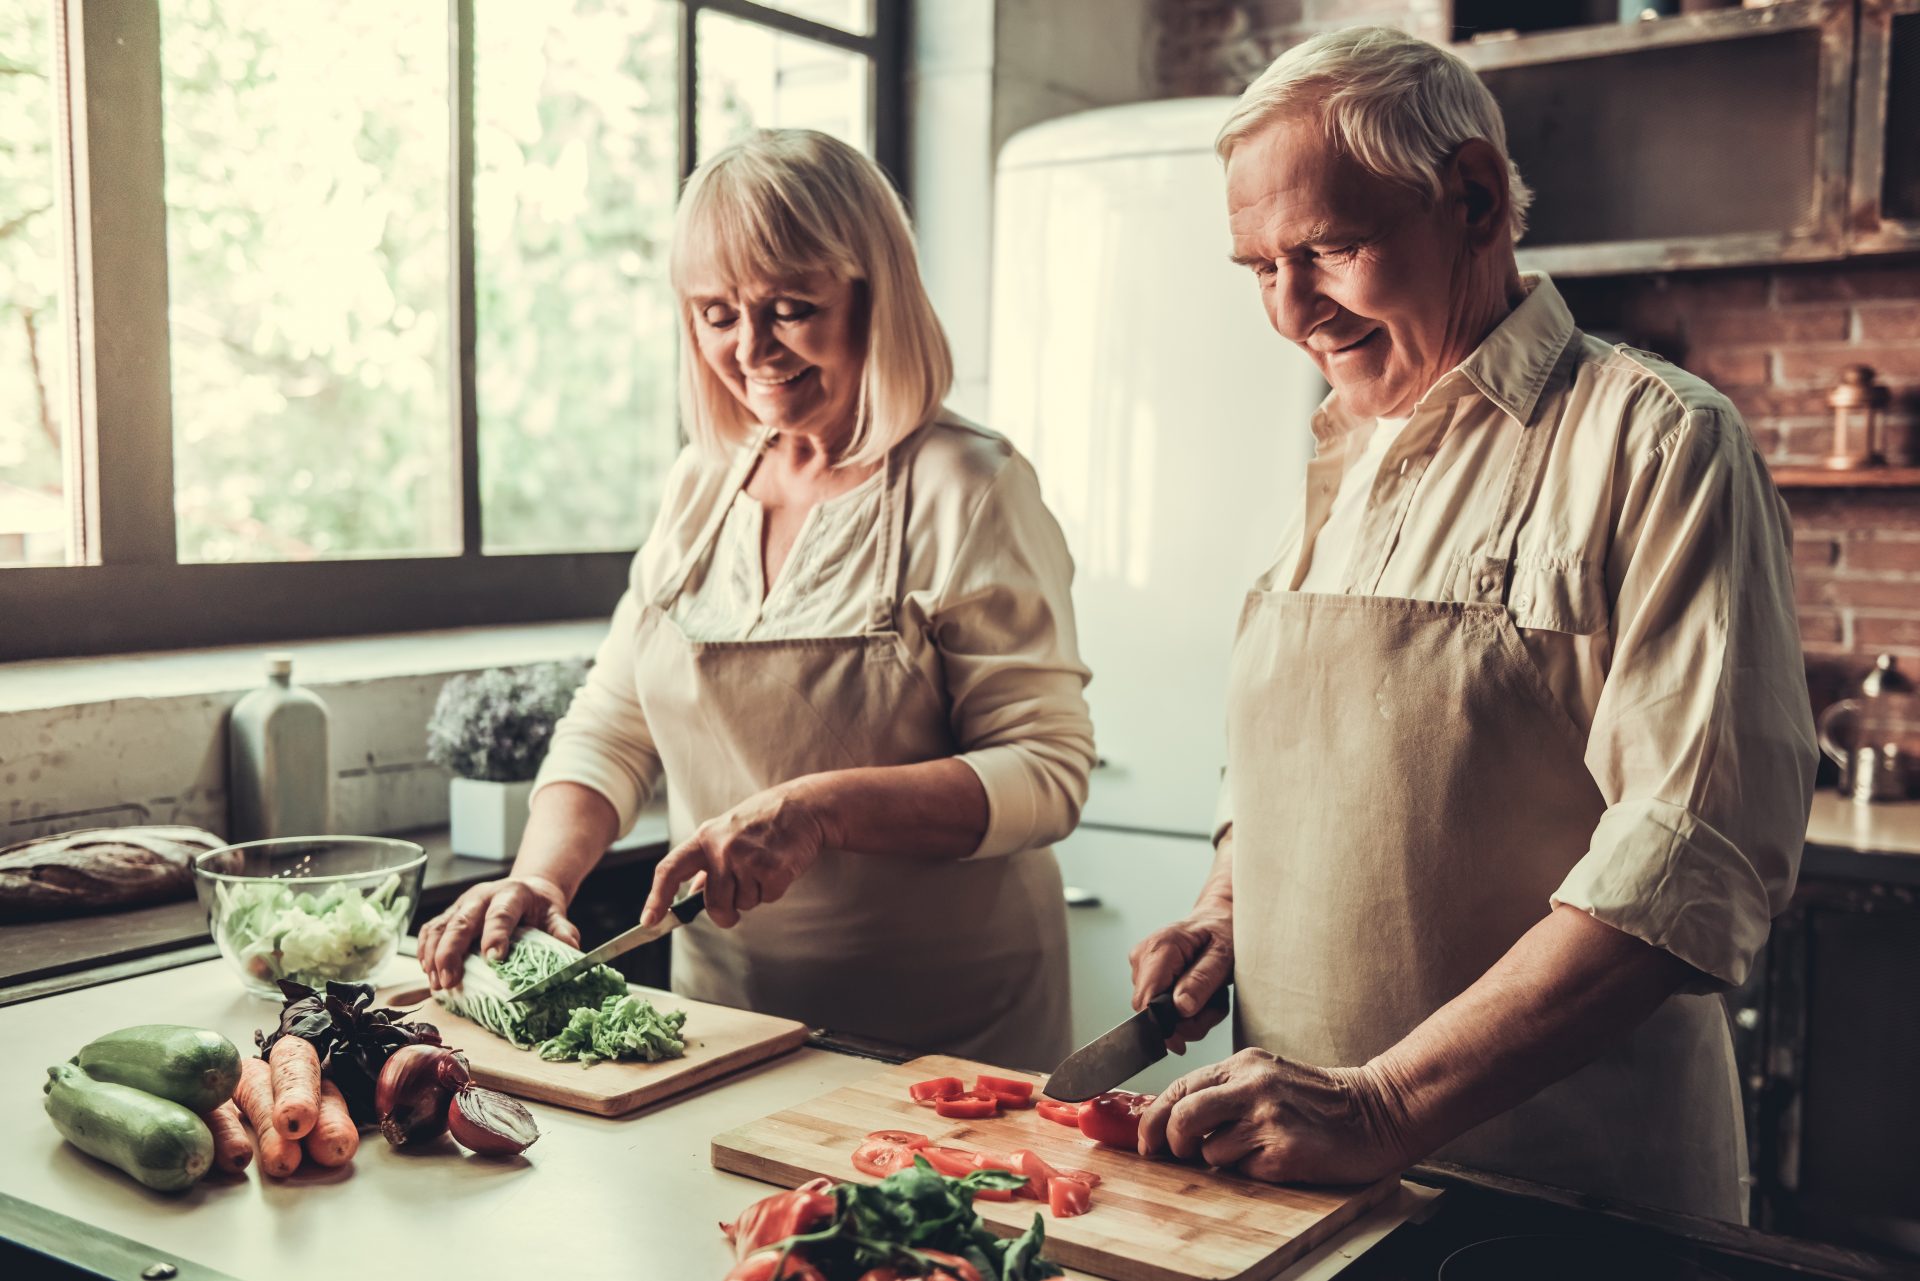 Die gesunde und vor allem auf jeden individuell abgestimmte Ernährung kann einen großen Einfluss auf unser gesamtes Wohlbefinden haben. Bildquelle: © Shutterstock.com